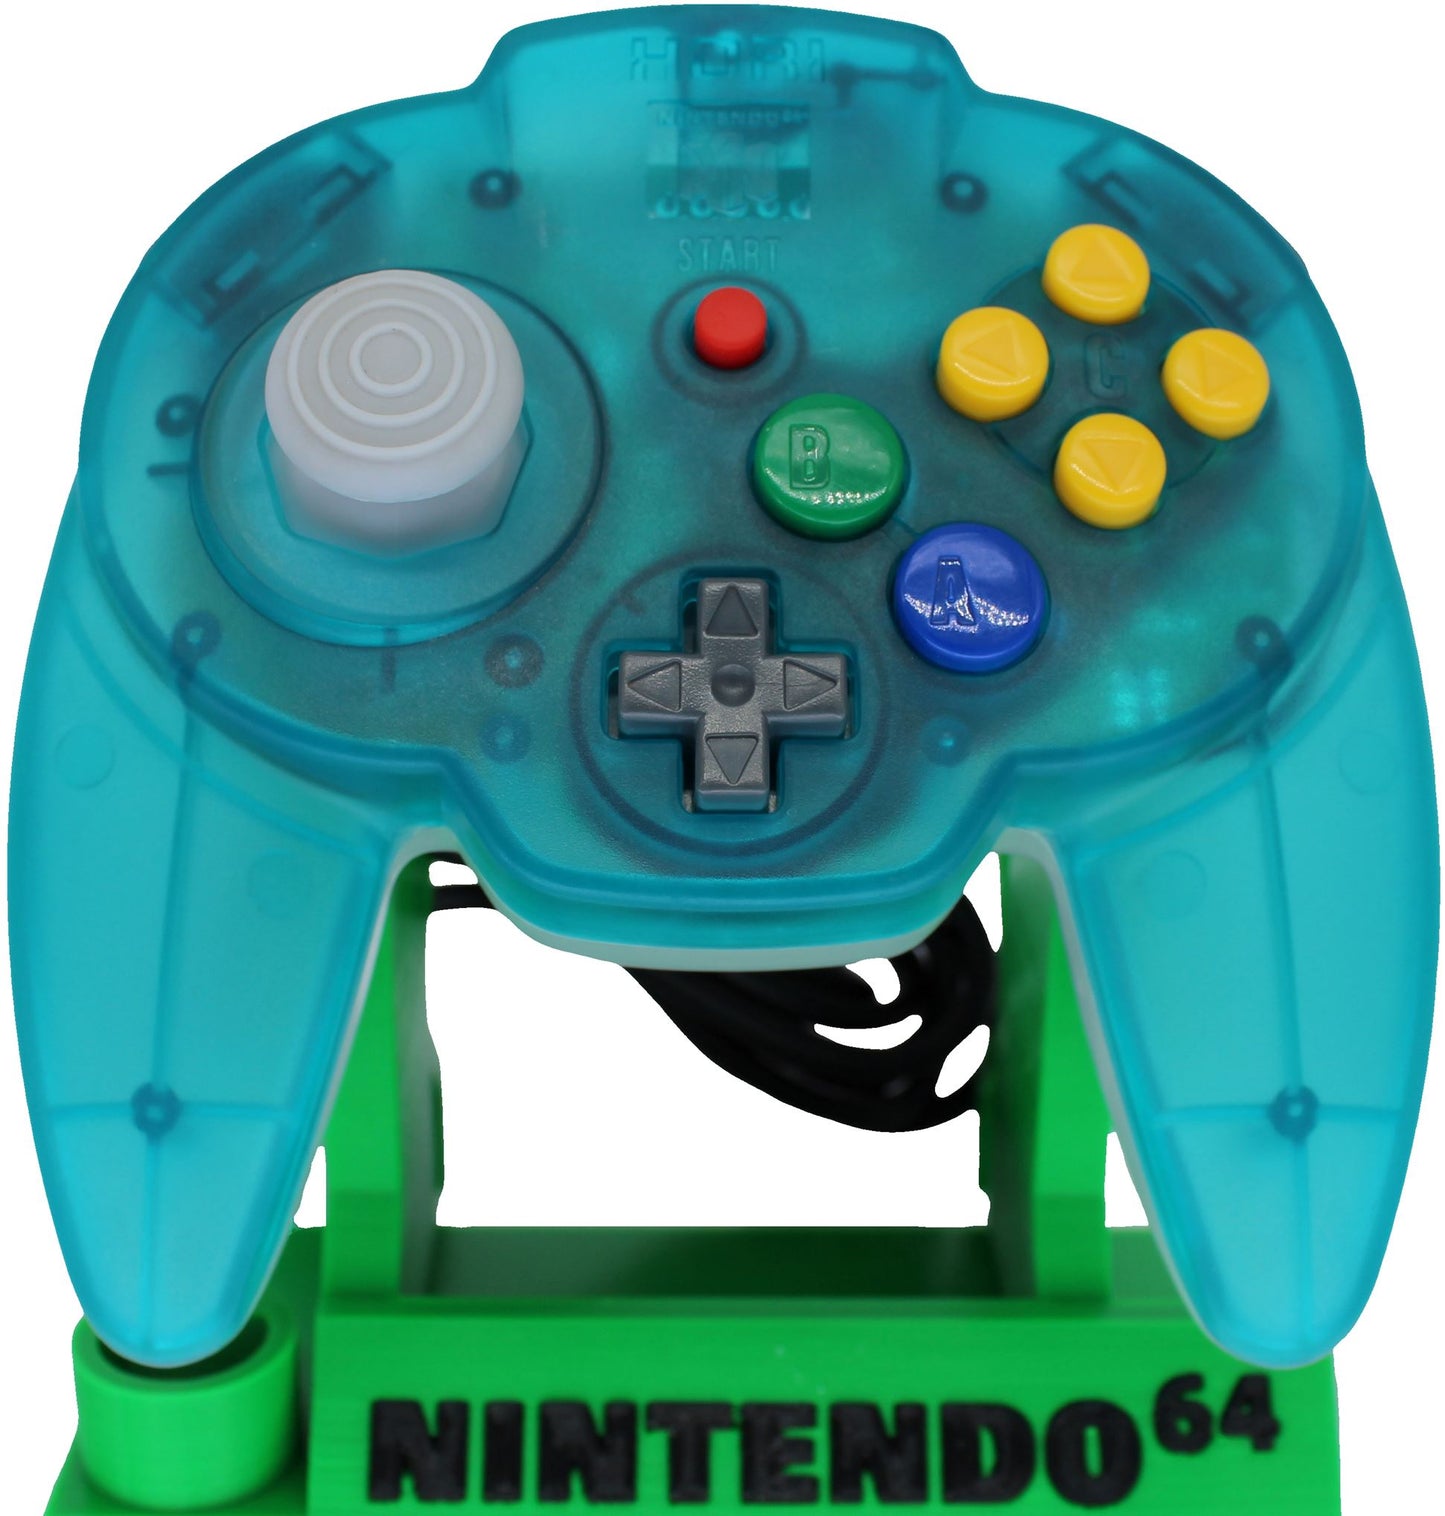 Nintendo 64 Controller by Hori